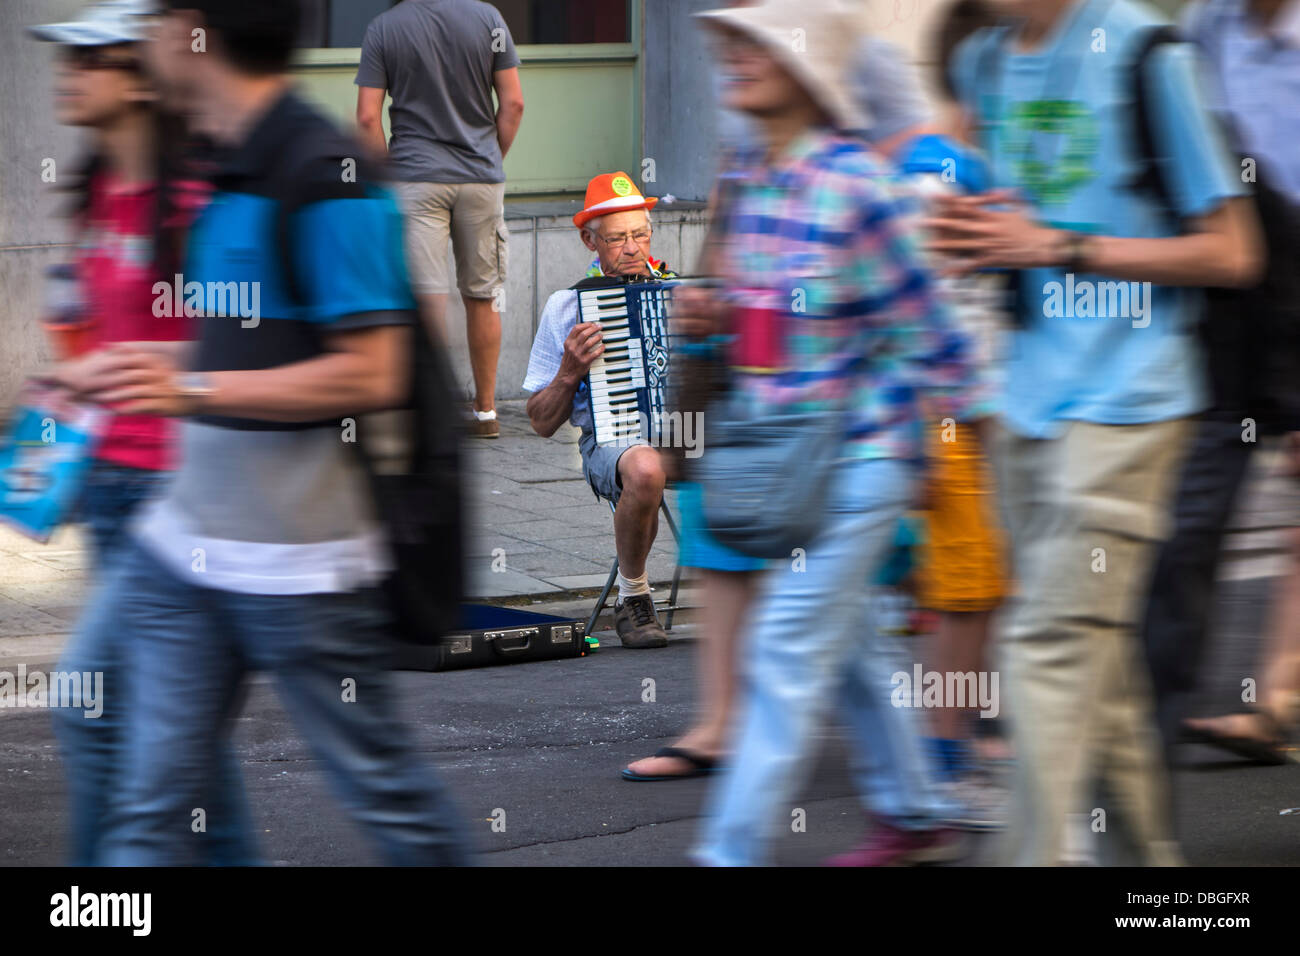 Traurige Szene der alten Mann / Akkordeonist spielt Akkordeonmusik unbemerkt durch Fußgänger zu Fuß durch in belebten Einkaufsstraße in der Stadt Stockfoto